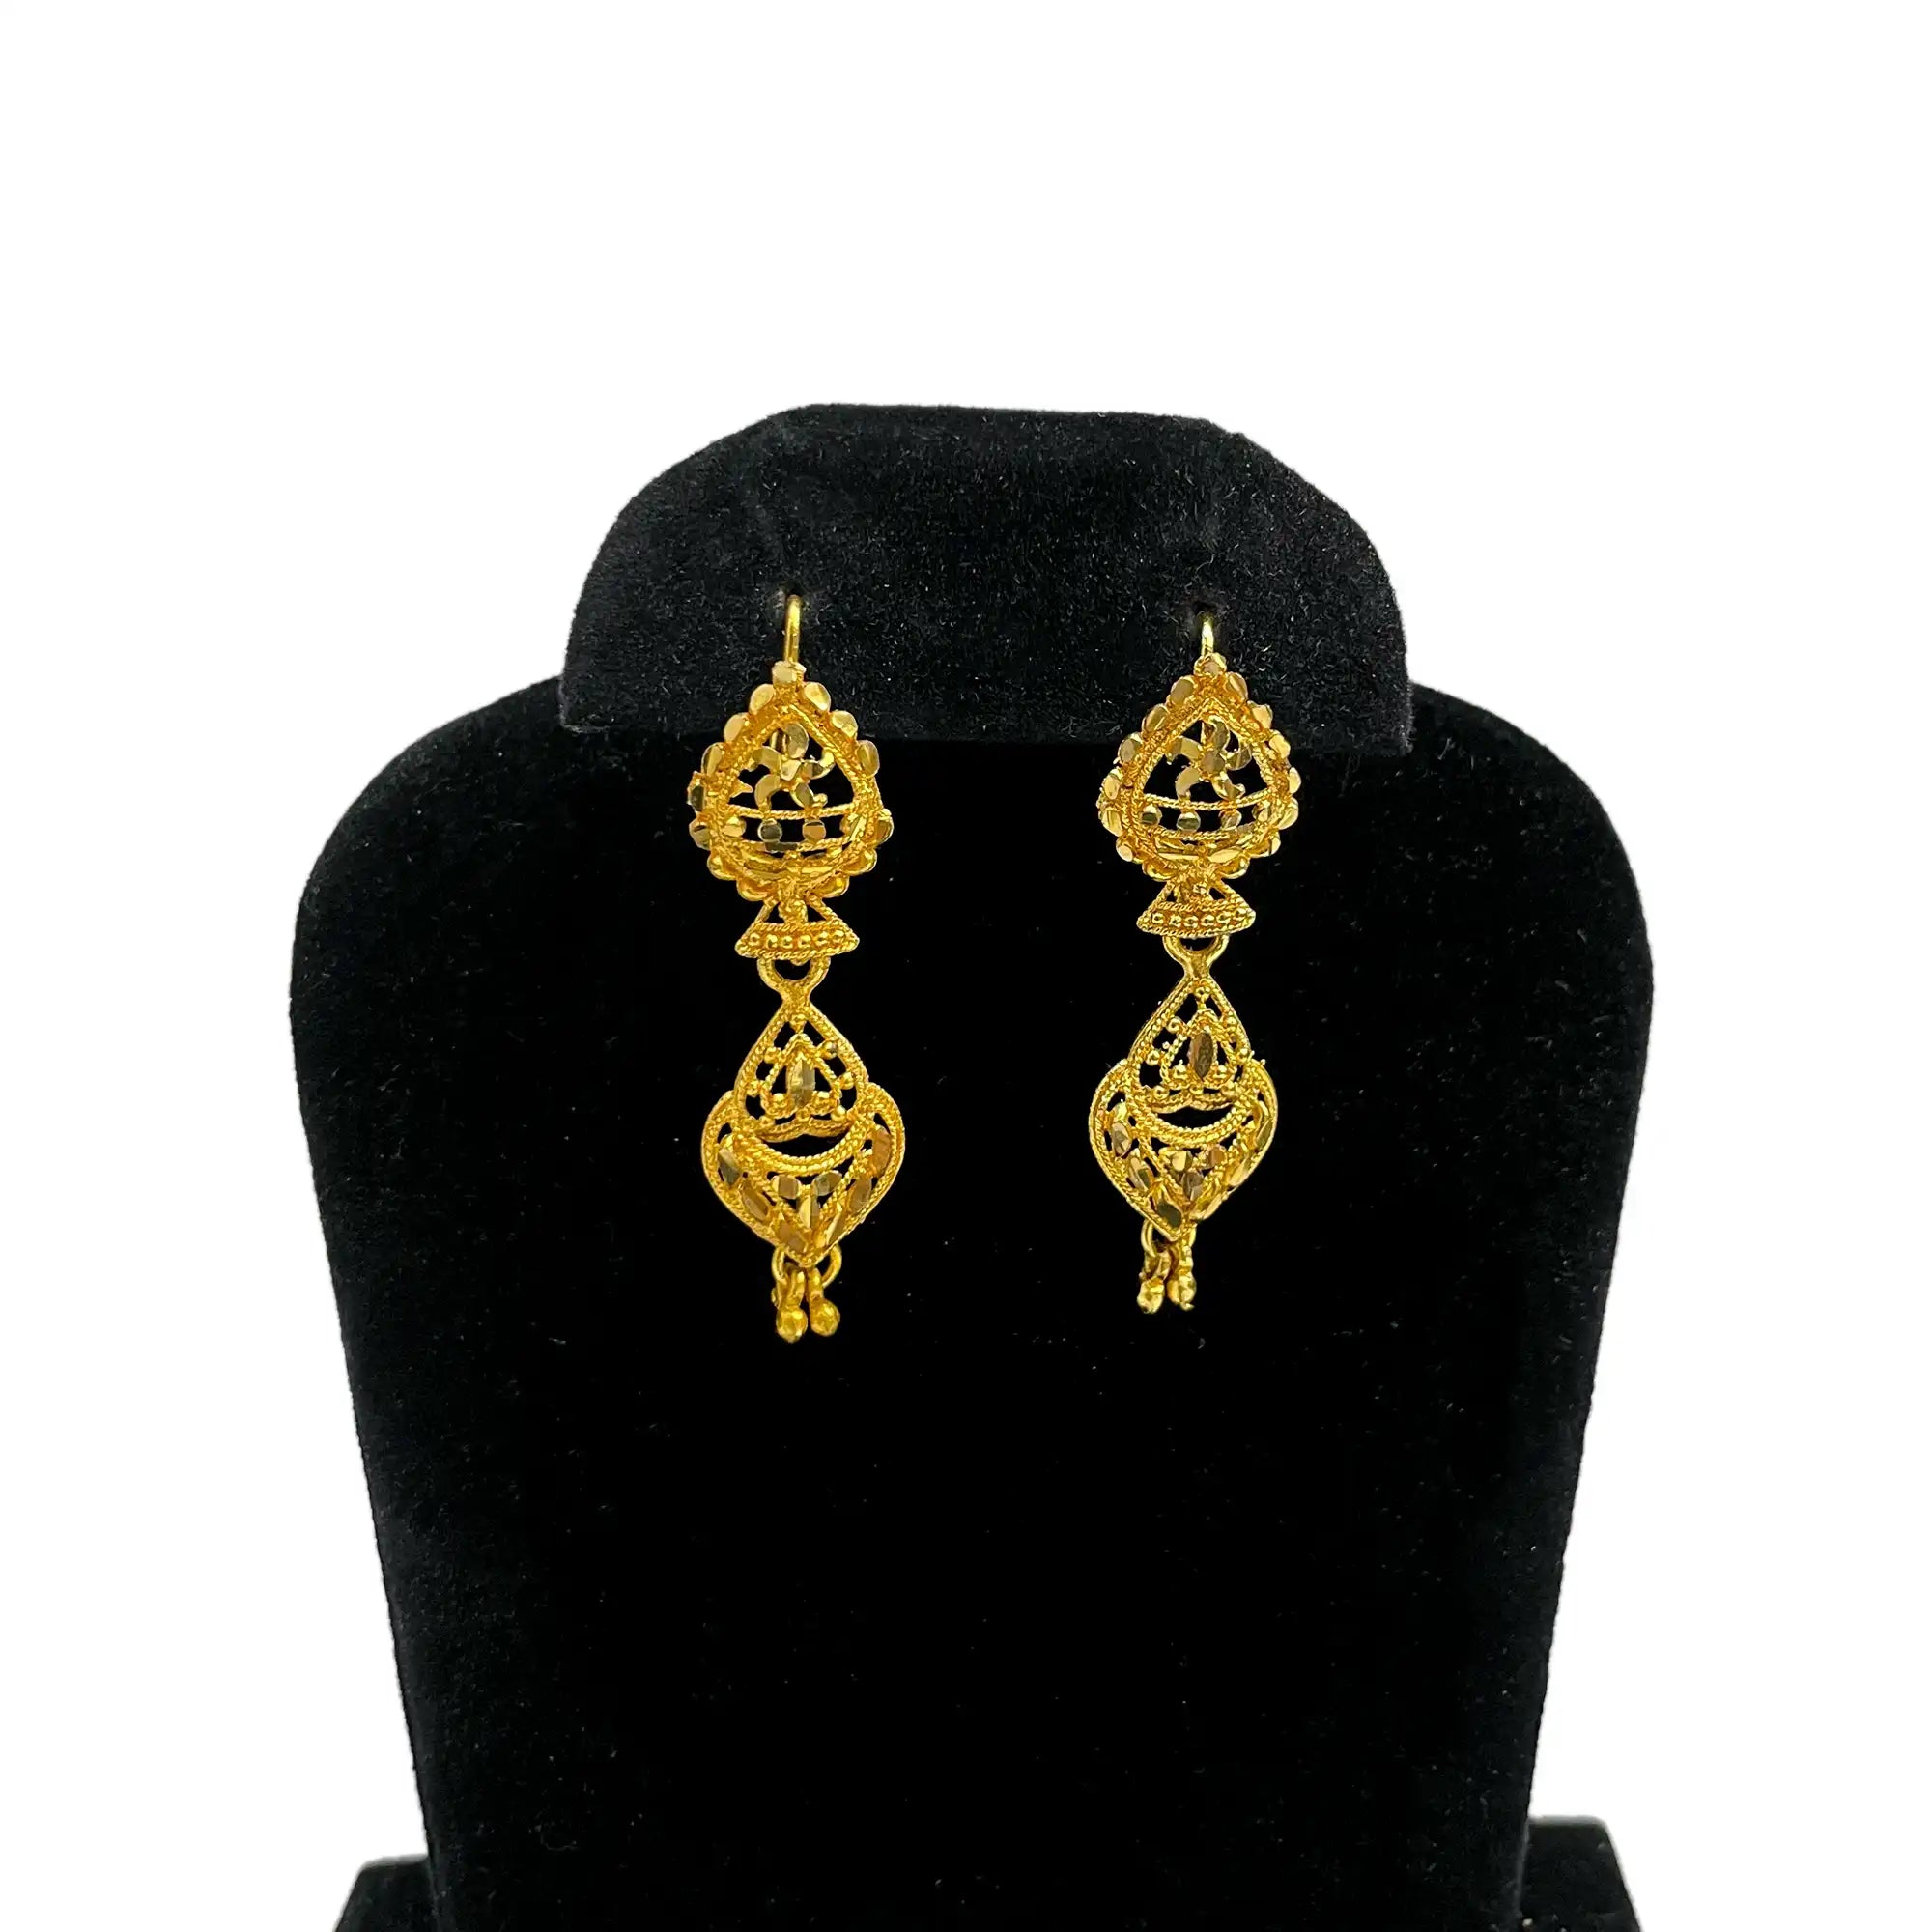 jhumka earrings, drope earrings, leaf design earrings, women gold jewelry